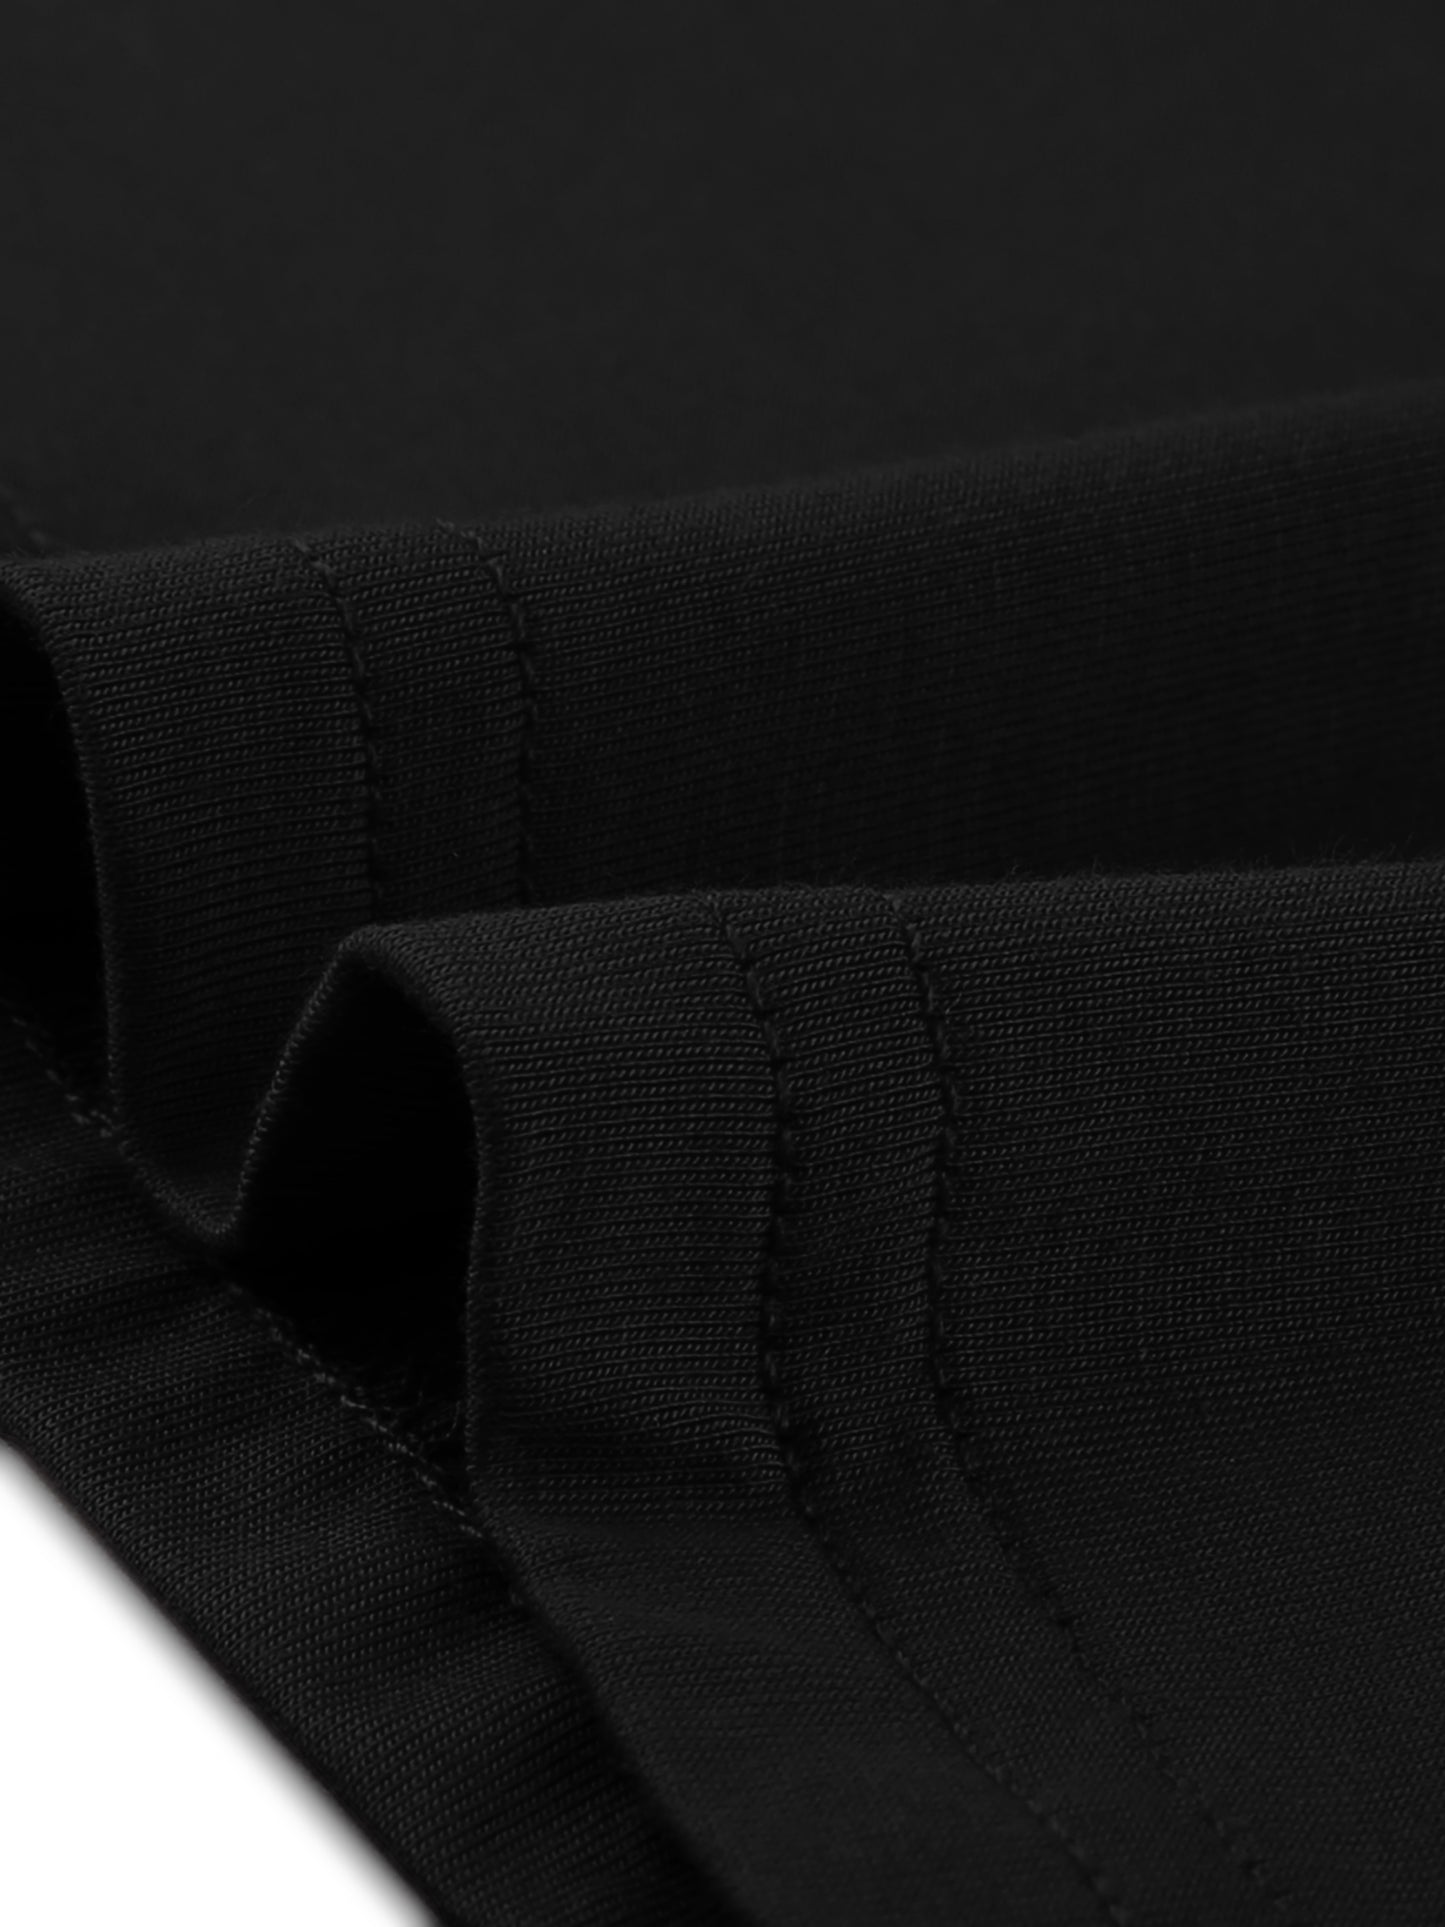 cheibear Sleeveless Sleepwear Chemises Lingerie V Neck Full Slip Pajama Dress Black